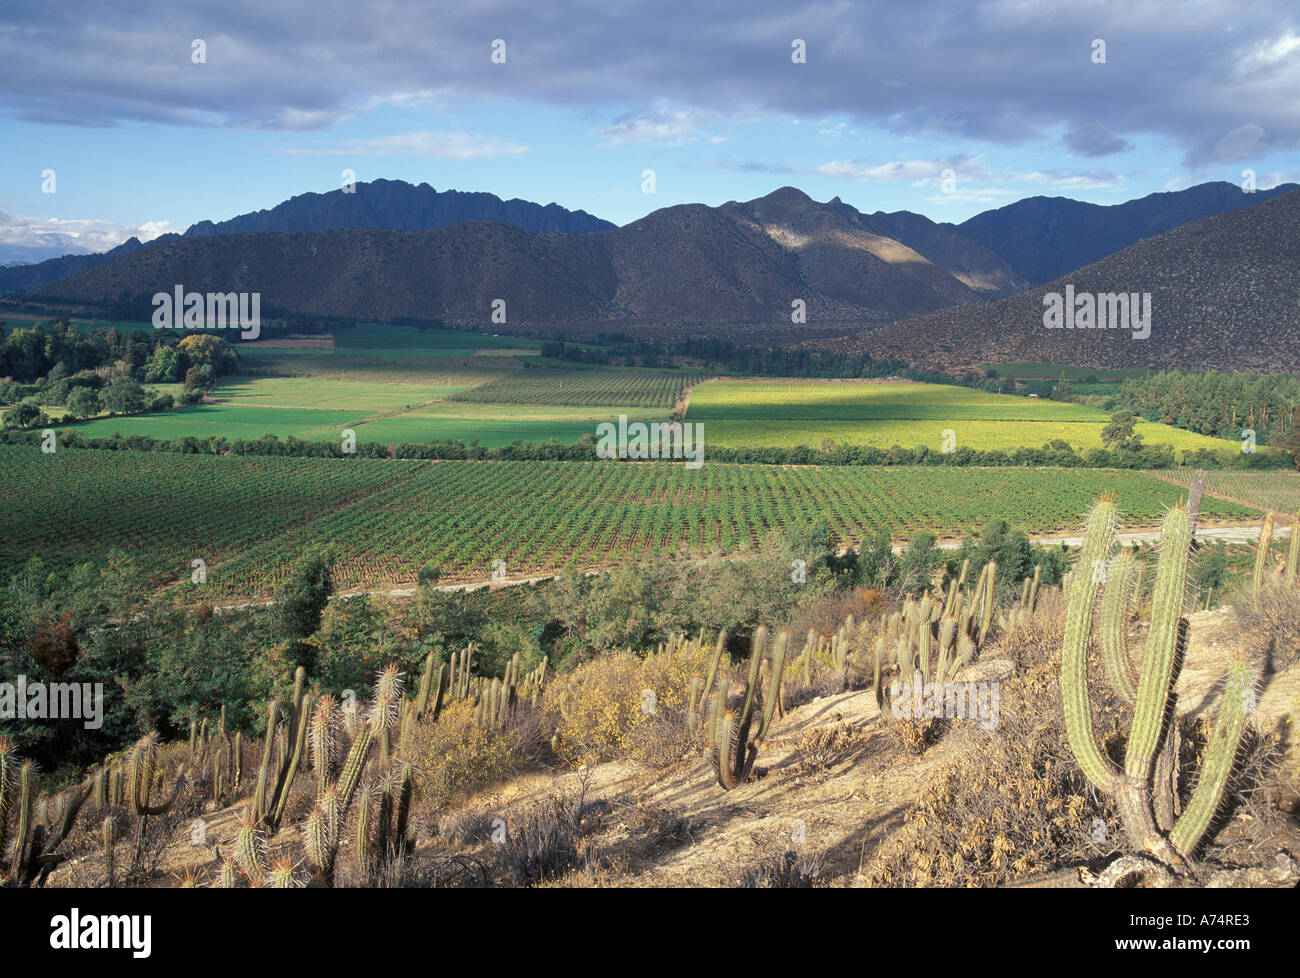 Sud America, Cile, Aconcagua Valley, Cacti border i vigneti in tutto il paesaggio nei pressi delle Ande Foto Stock